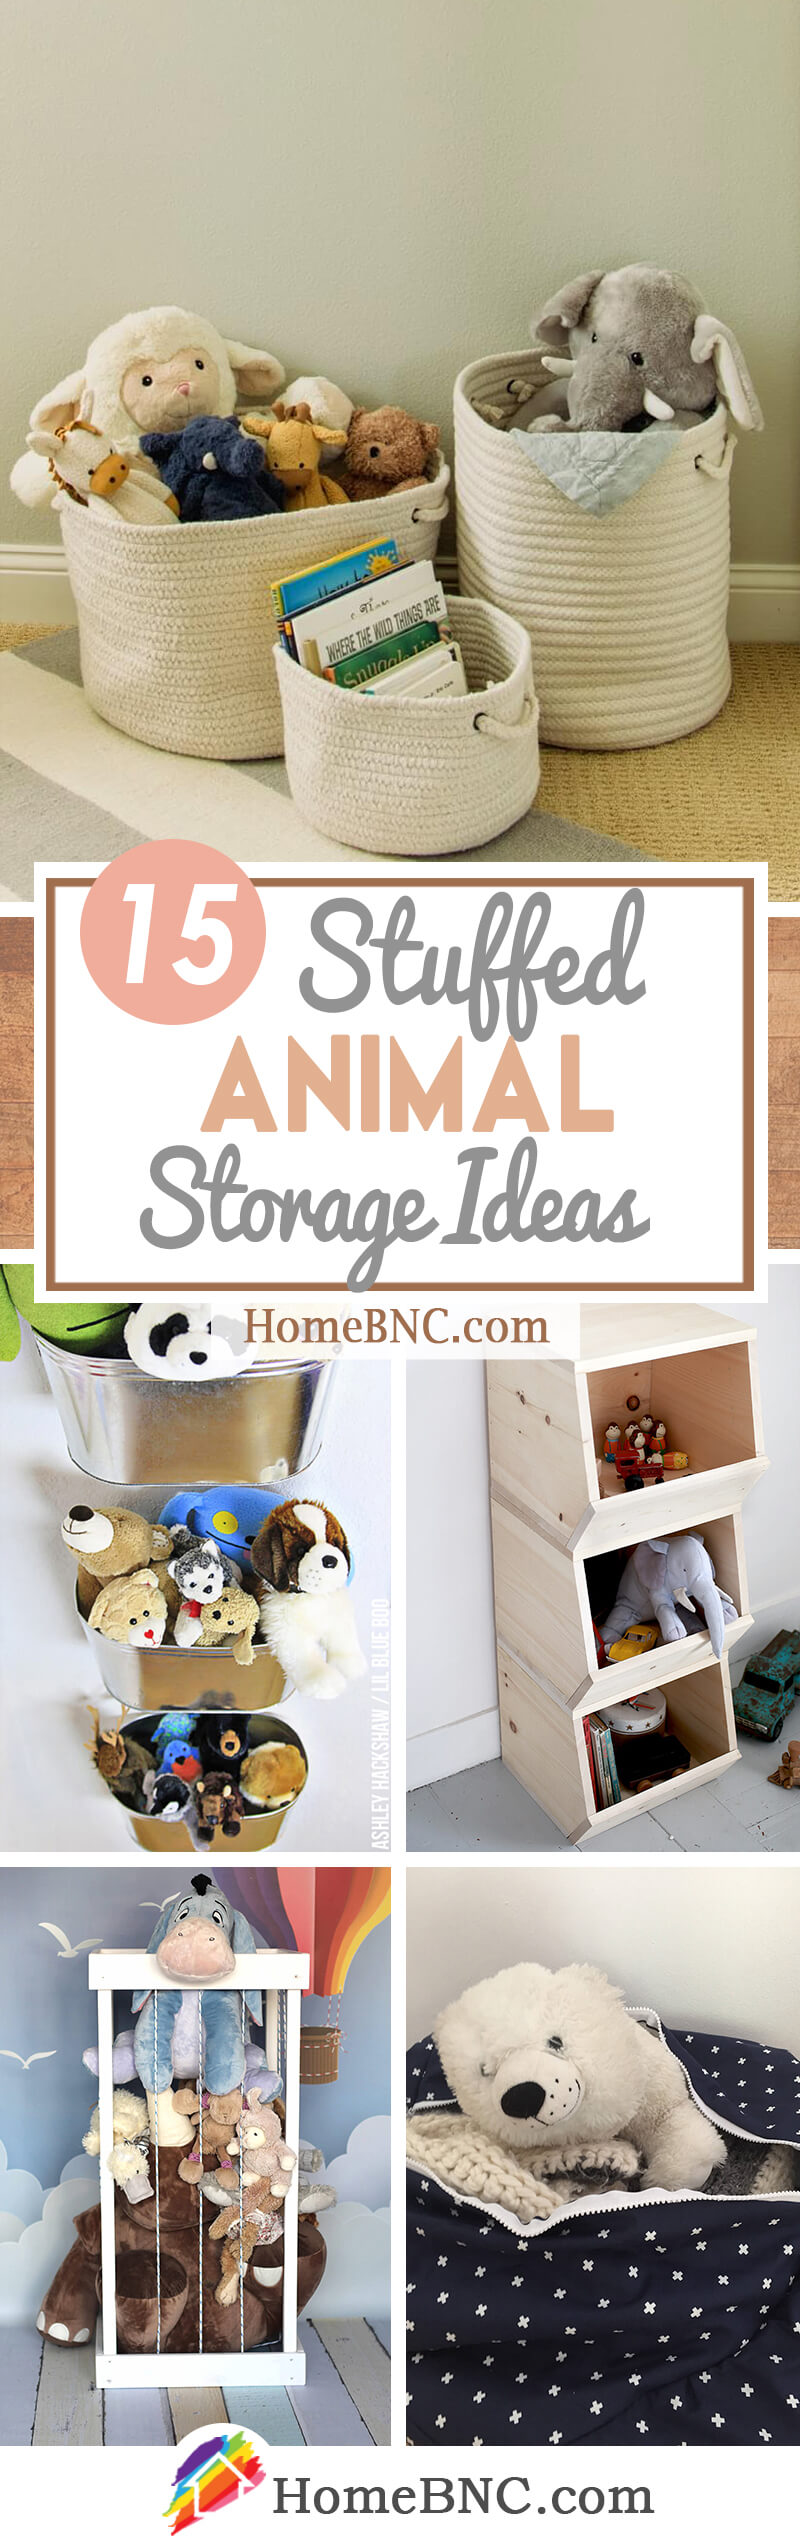 best storage for stuffed animals